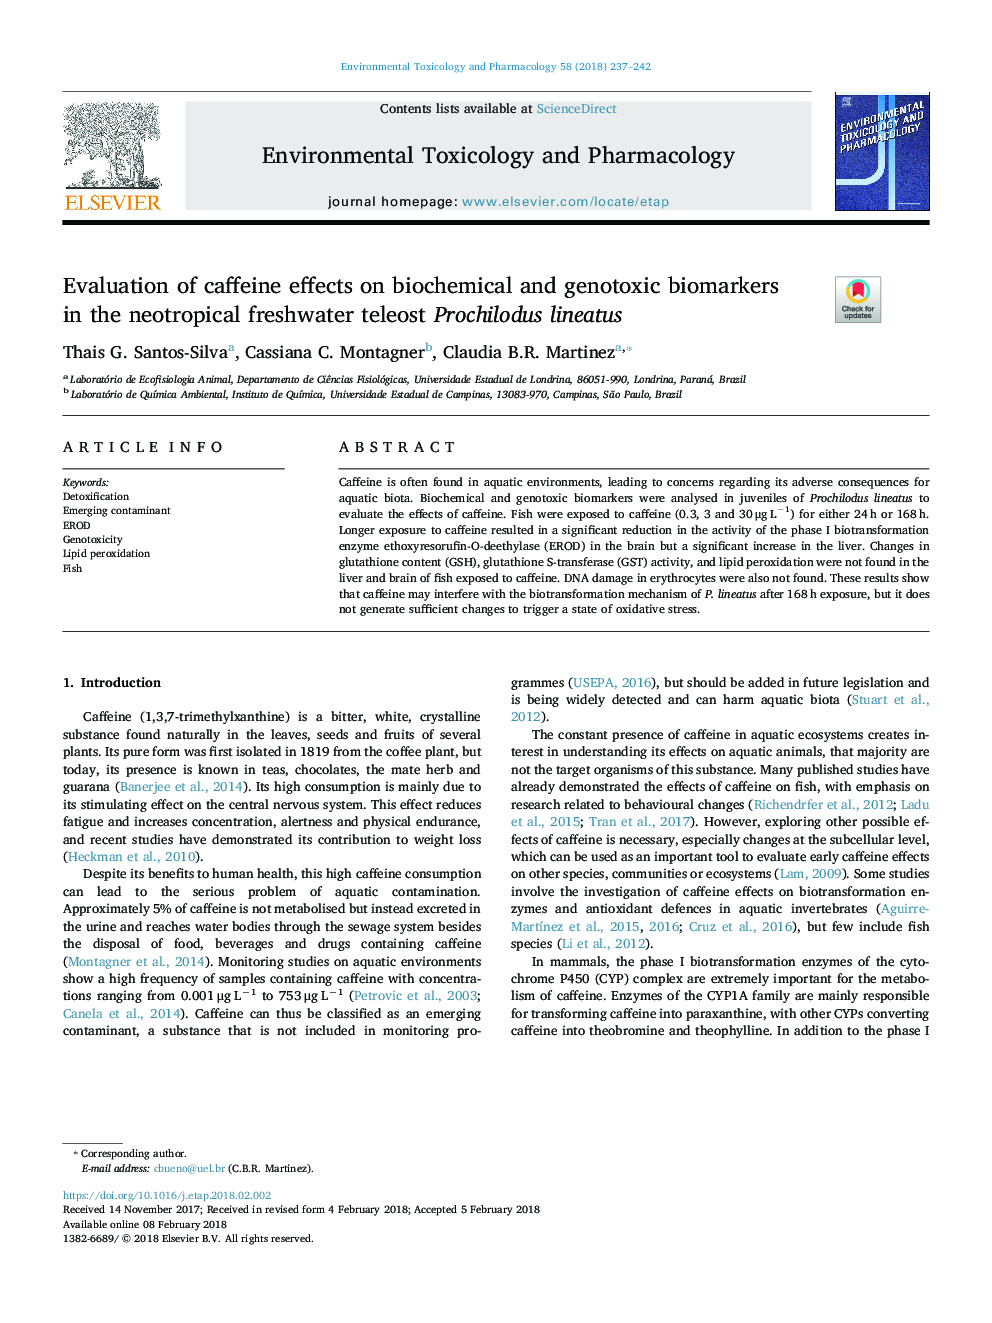 ارزیابی اثرات کافئین بر بیومارکرهای بیوشیمیایی و ژنوتوکسیک در پروتزیلدوس لیناتوس 